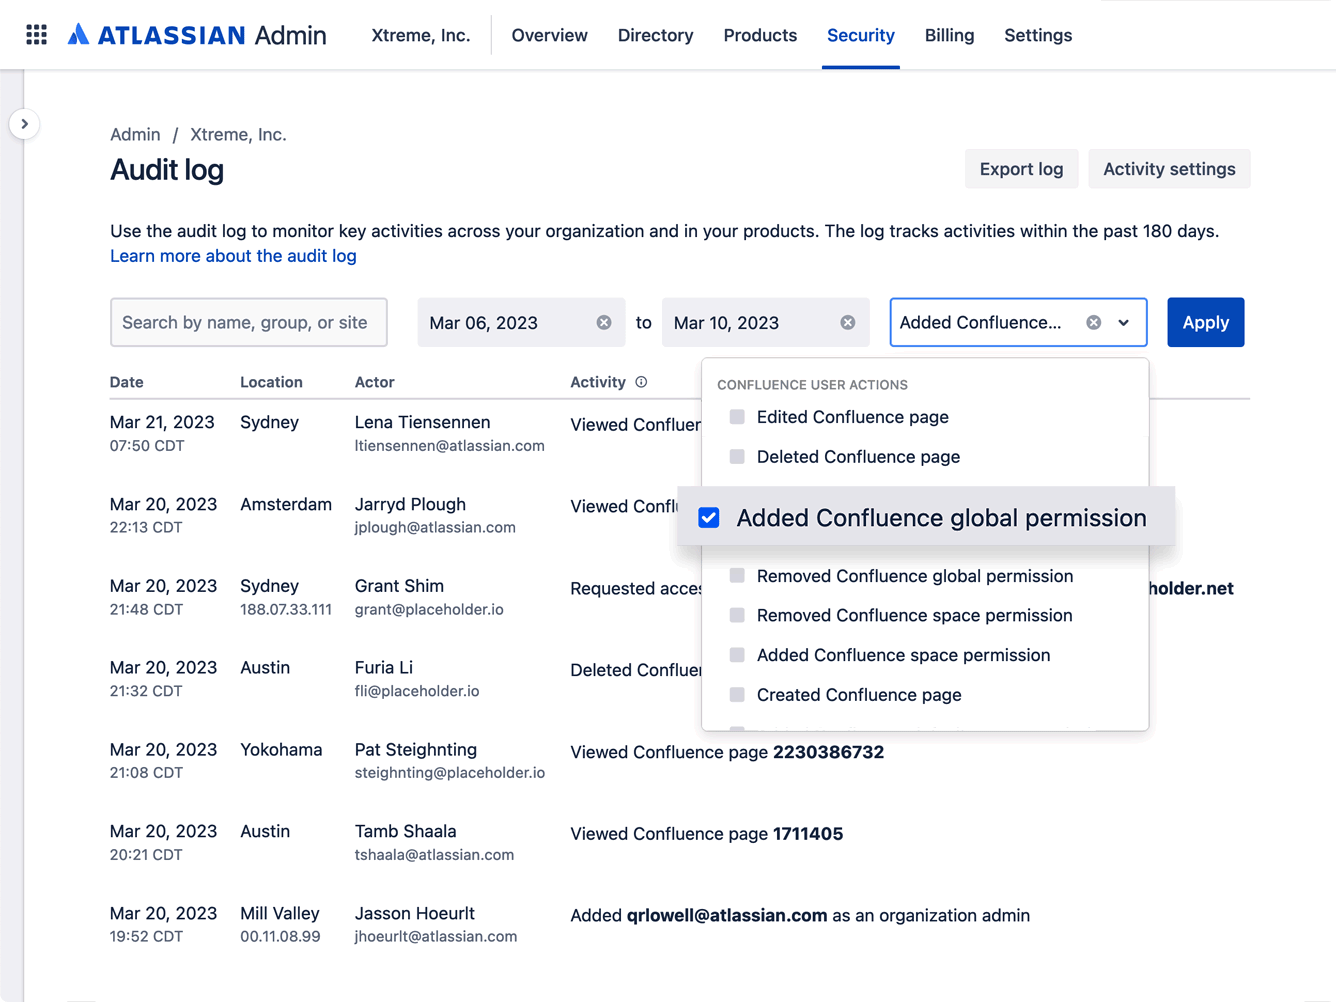 Log de auditoria no hub de administração Atlassian com a visão das ações de permissão global do Confluence